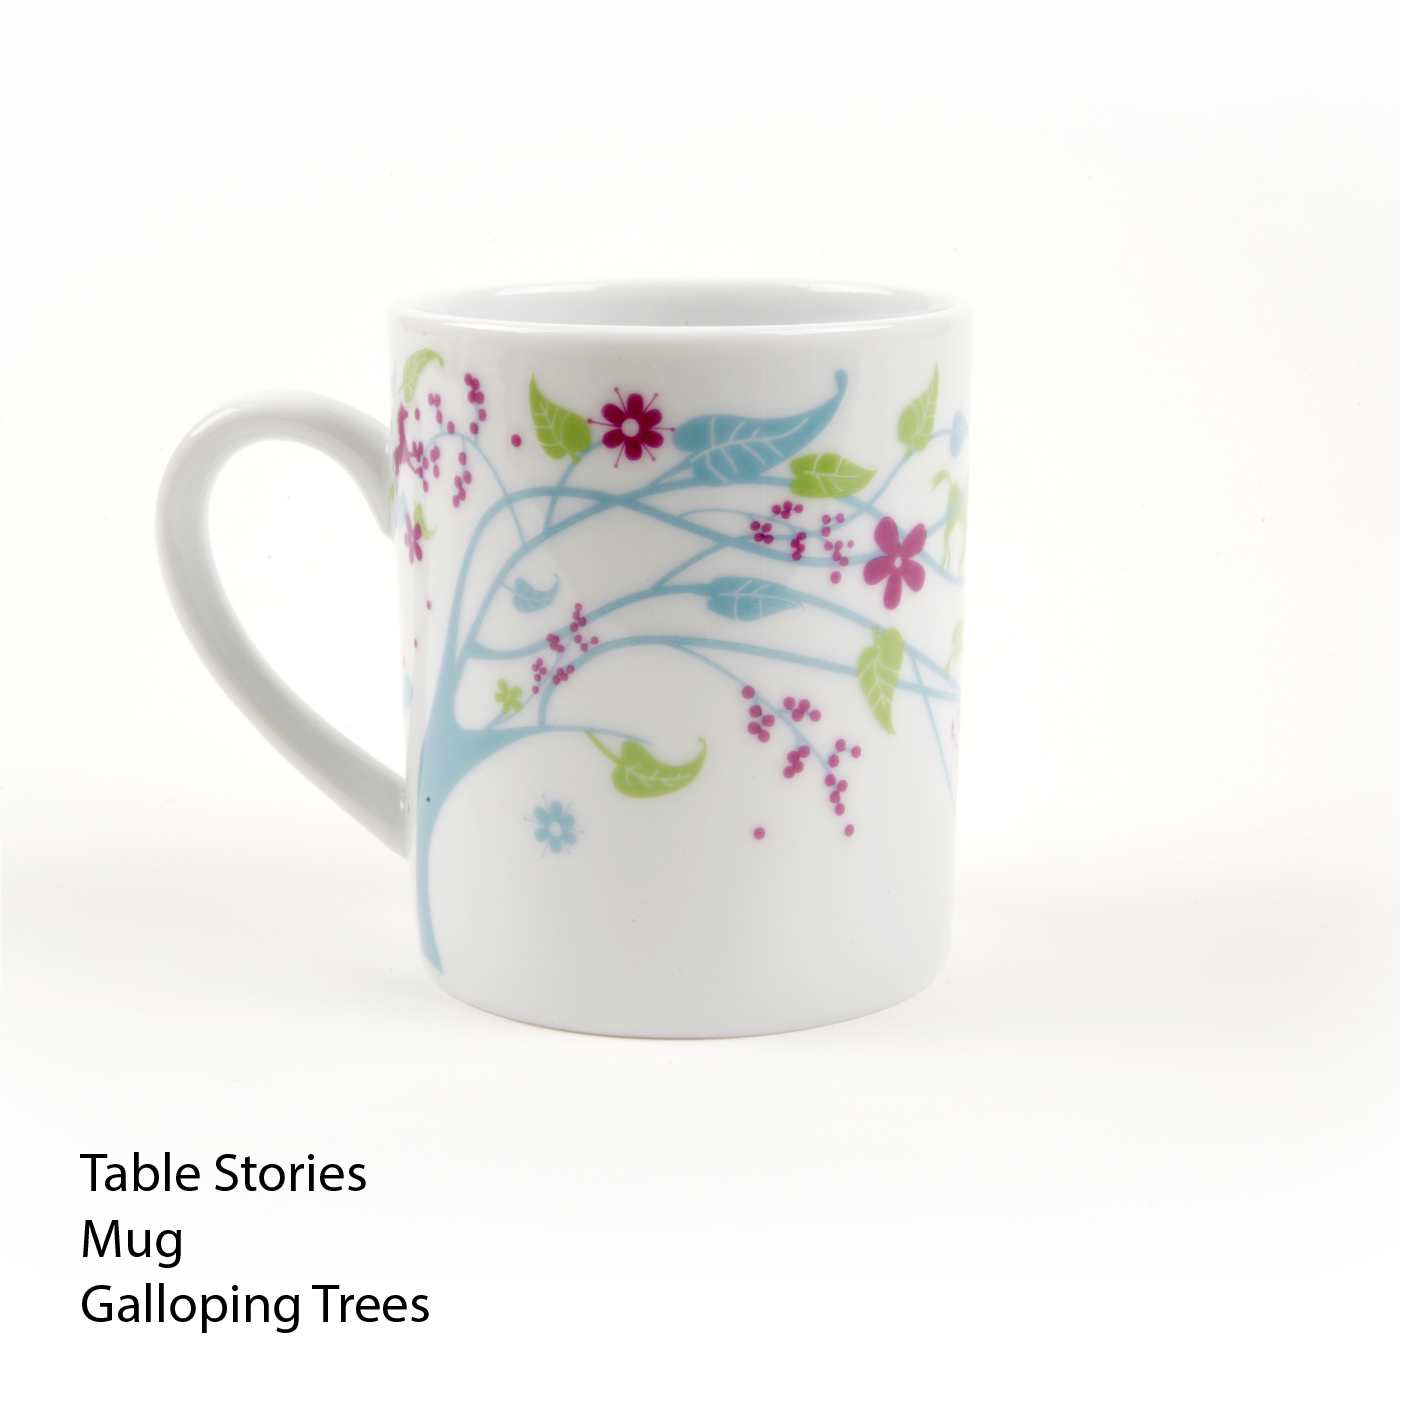 Table Stories - Mug